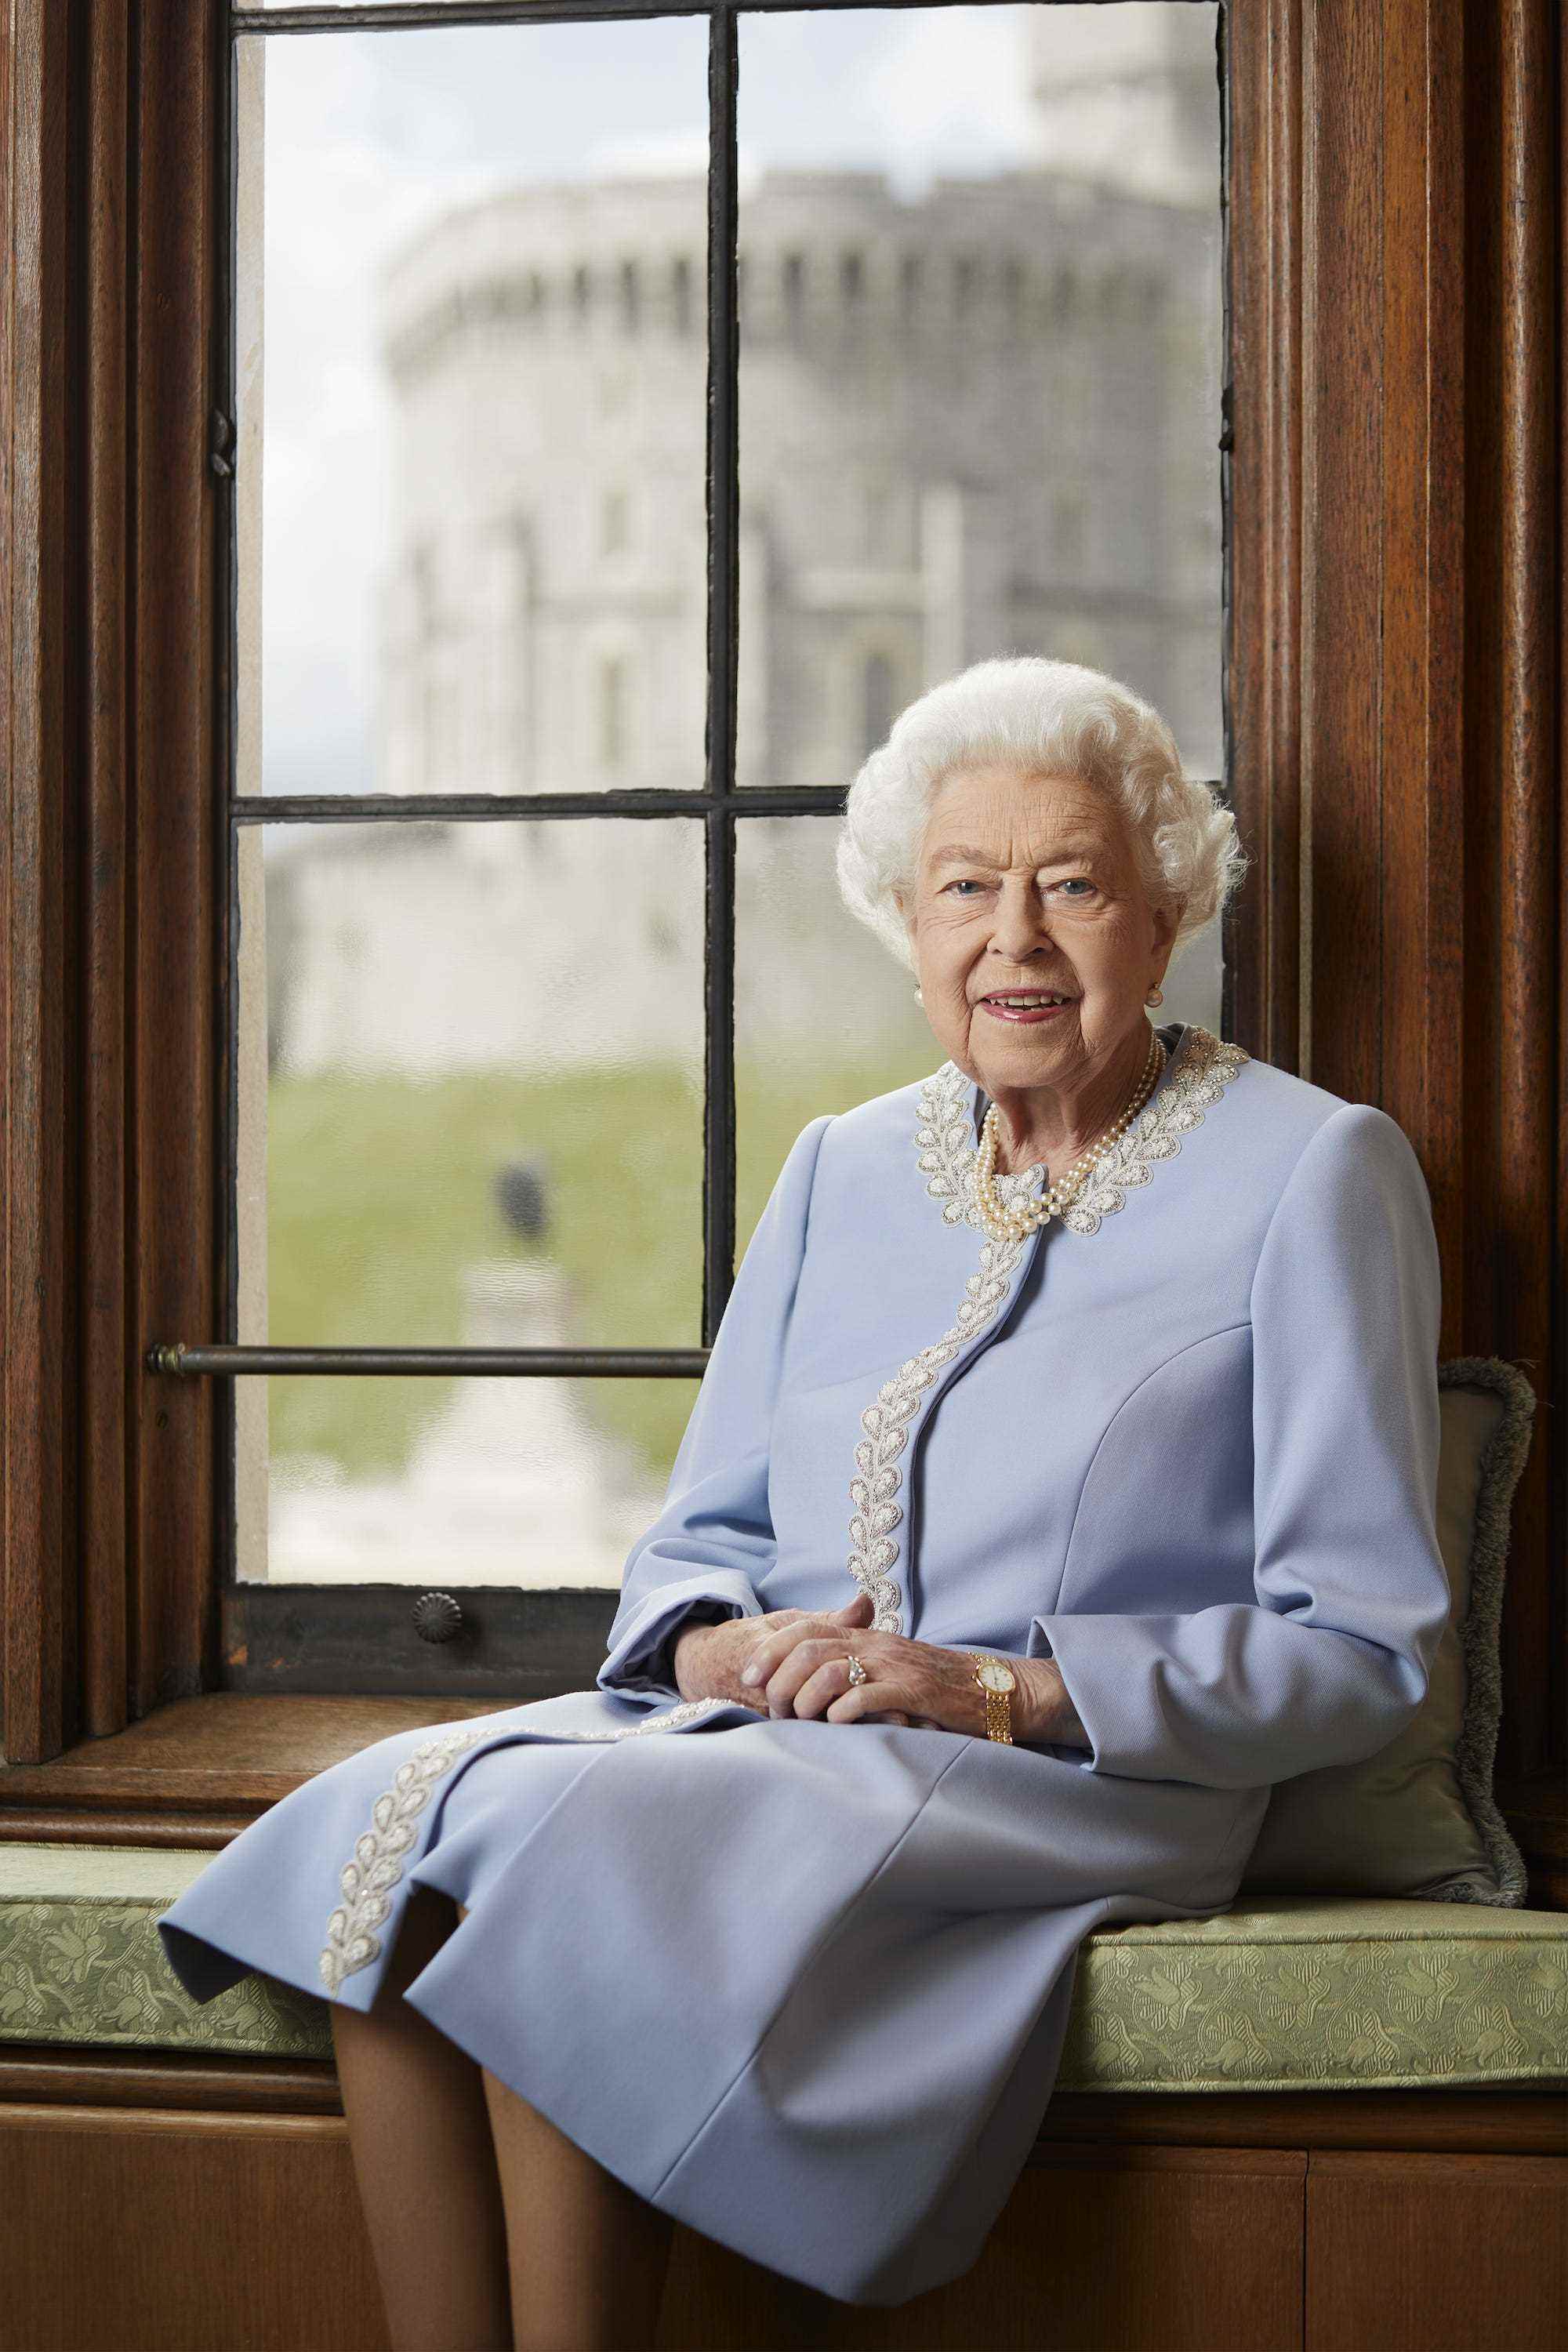 Königin Elizabeth sitzt für ein königliches Porträt auf einer Bank.